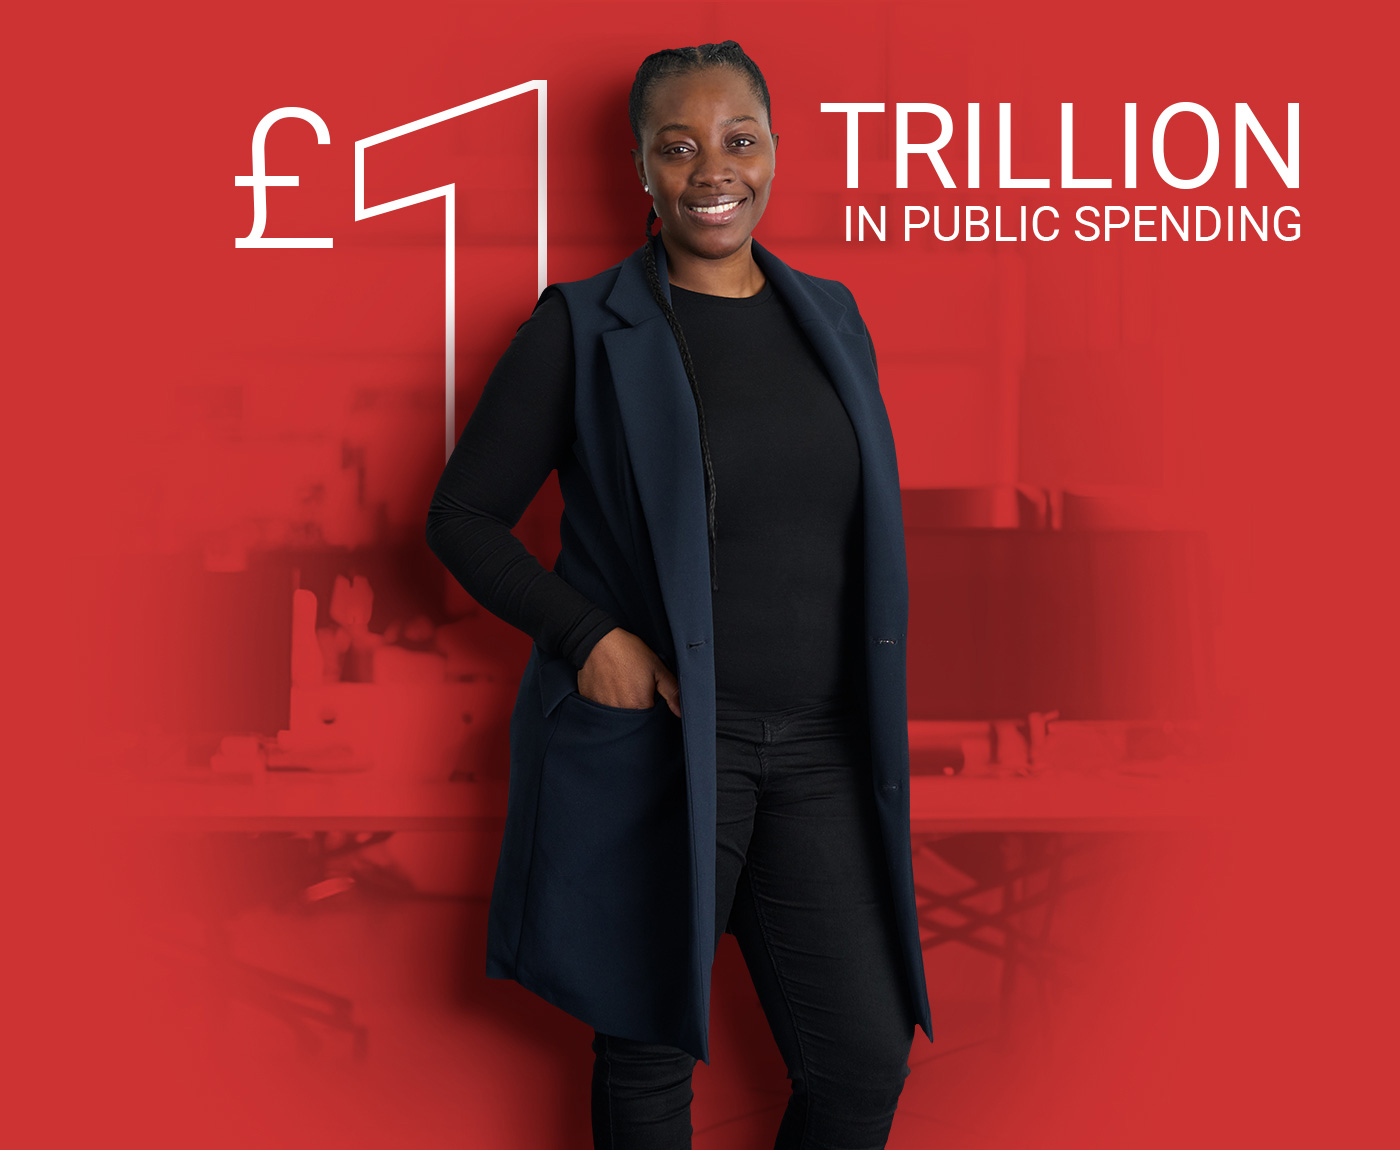 £1 trillion in public spending